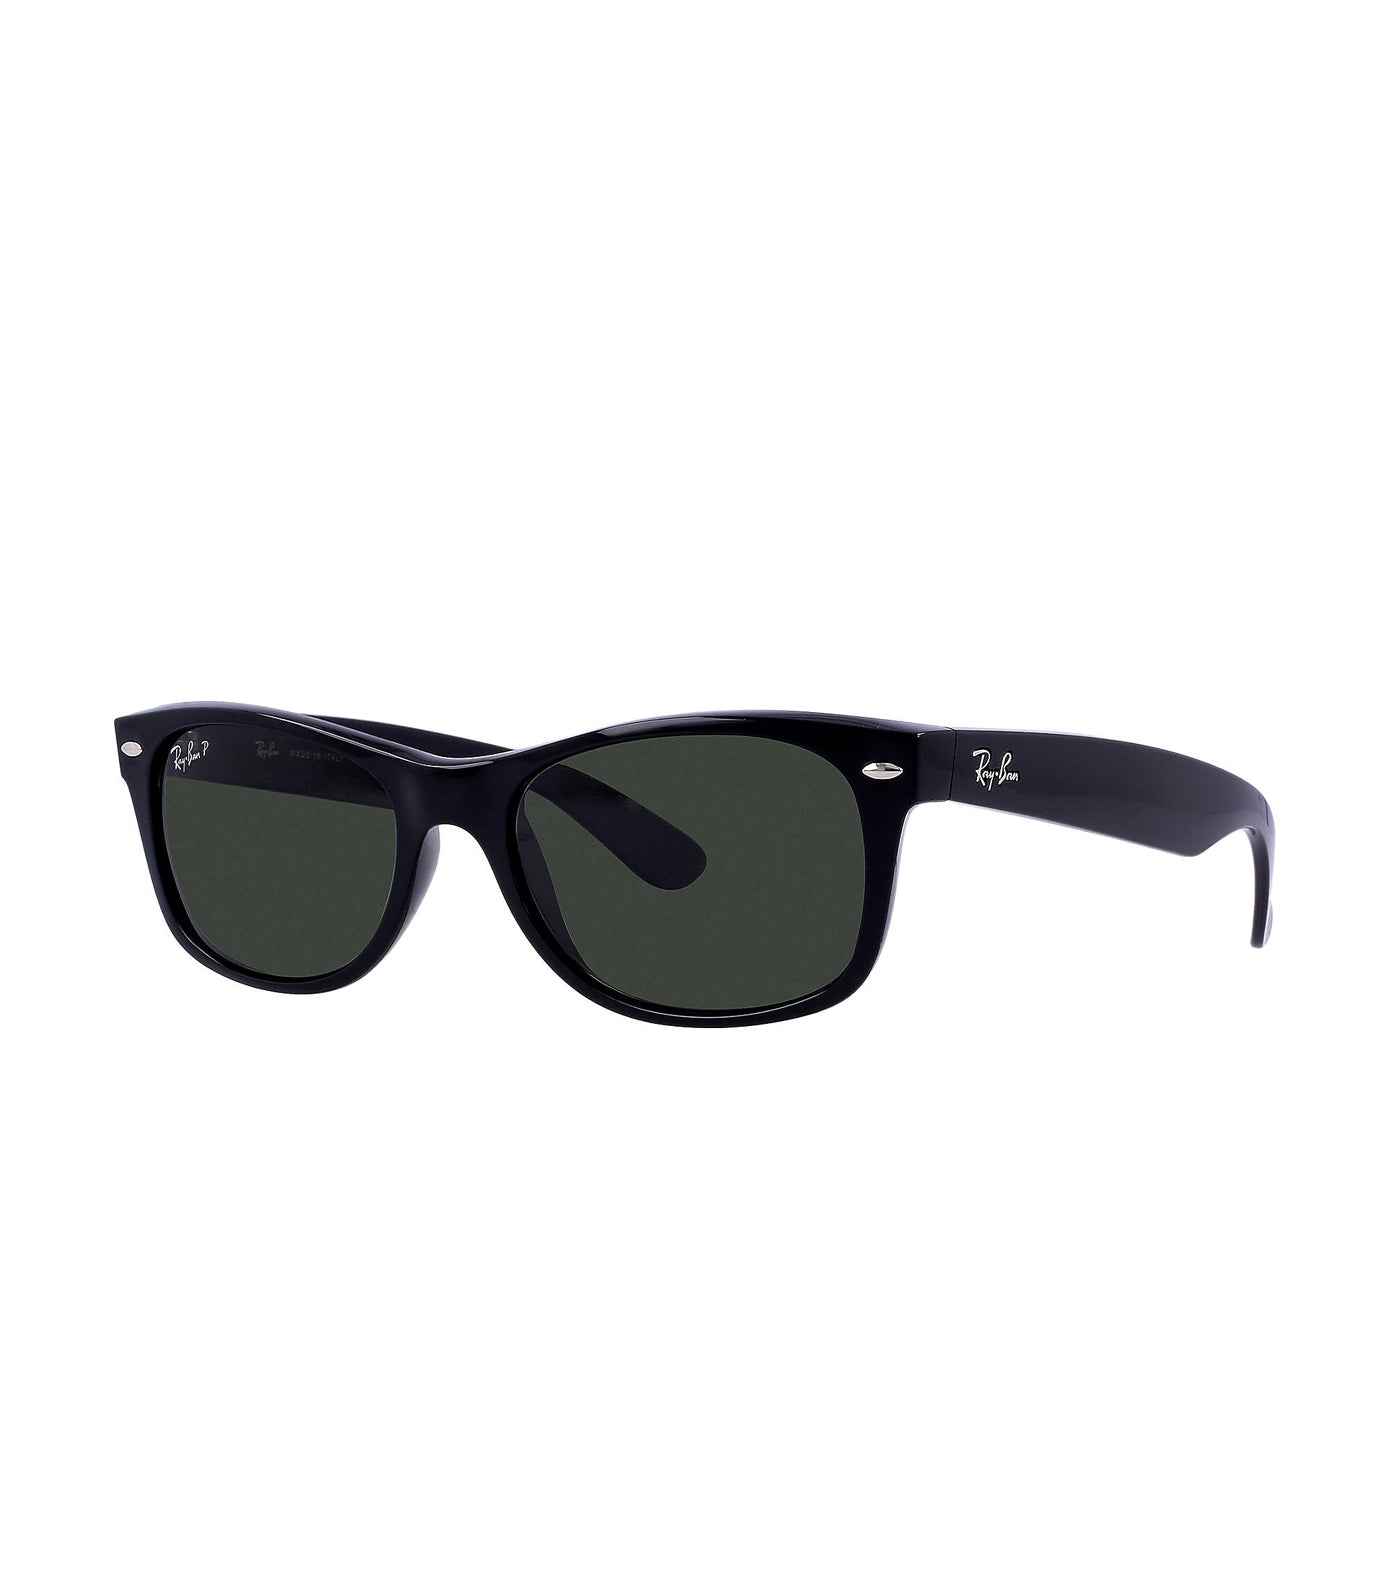 New Wayfarer Sunglasses Large 58 Black Polarized